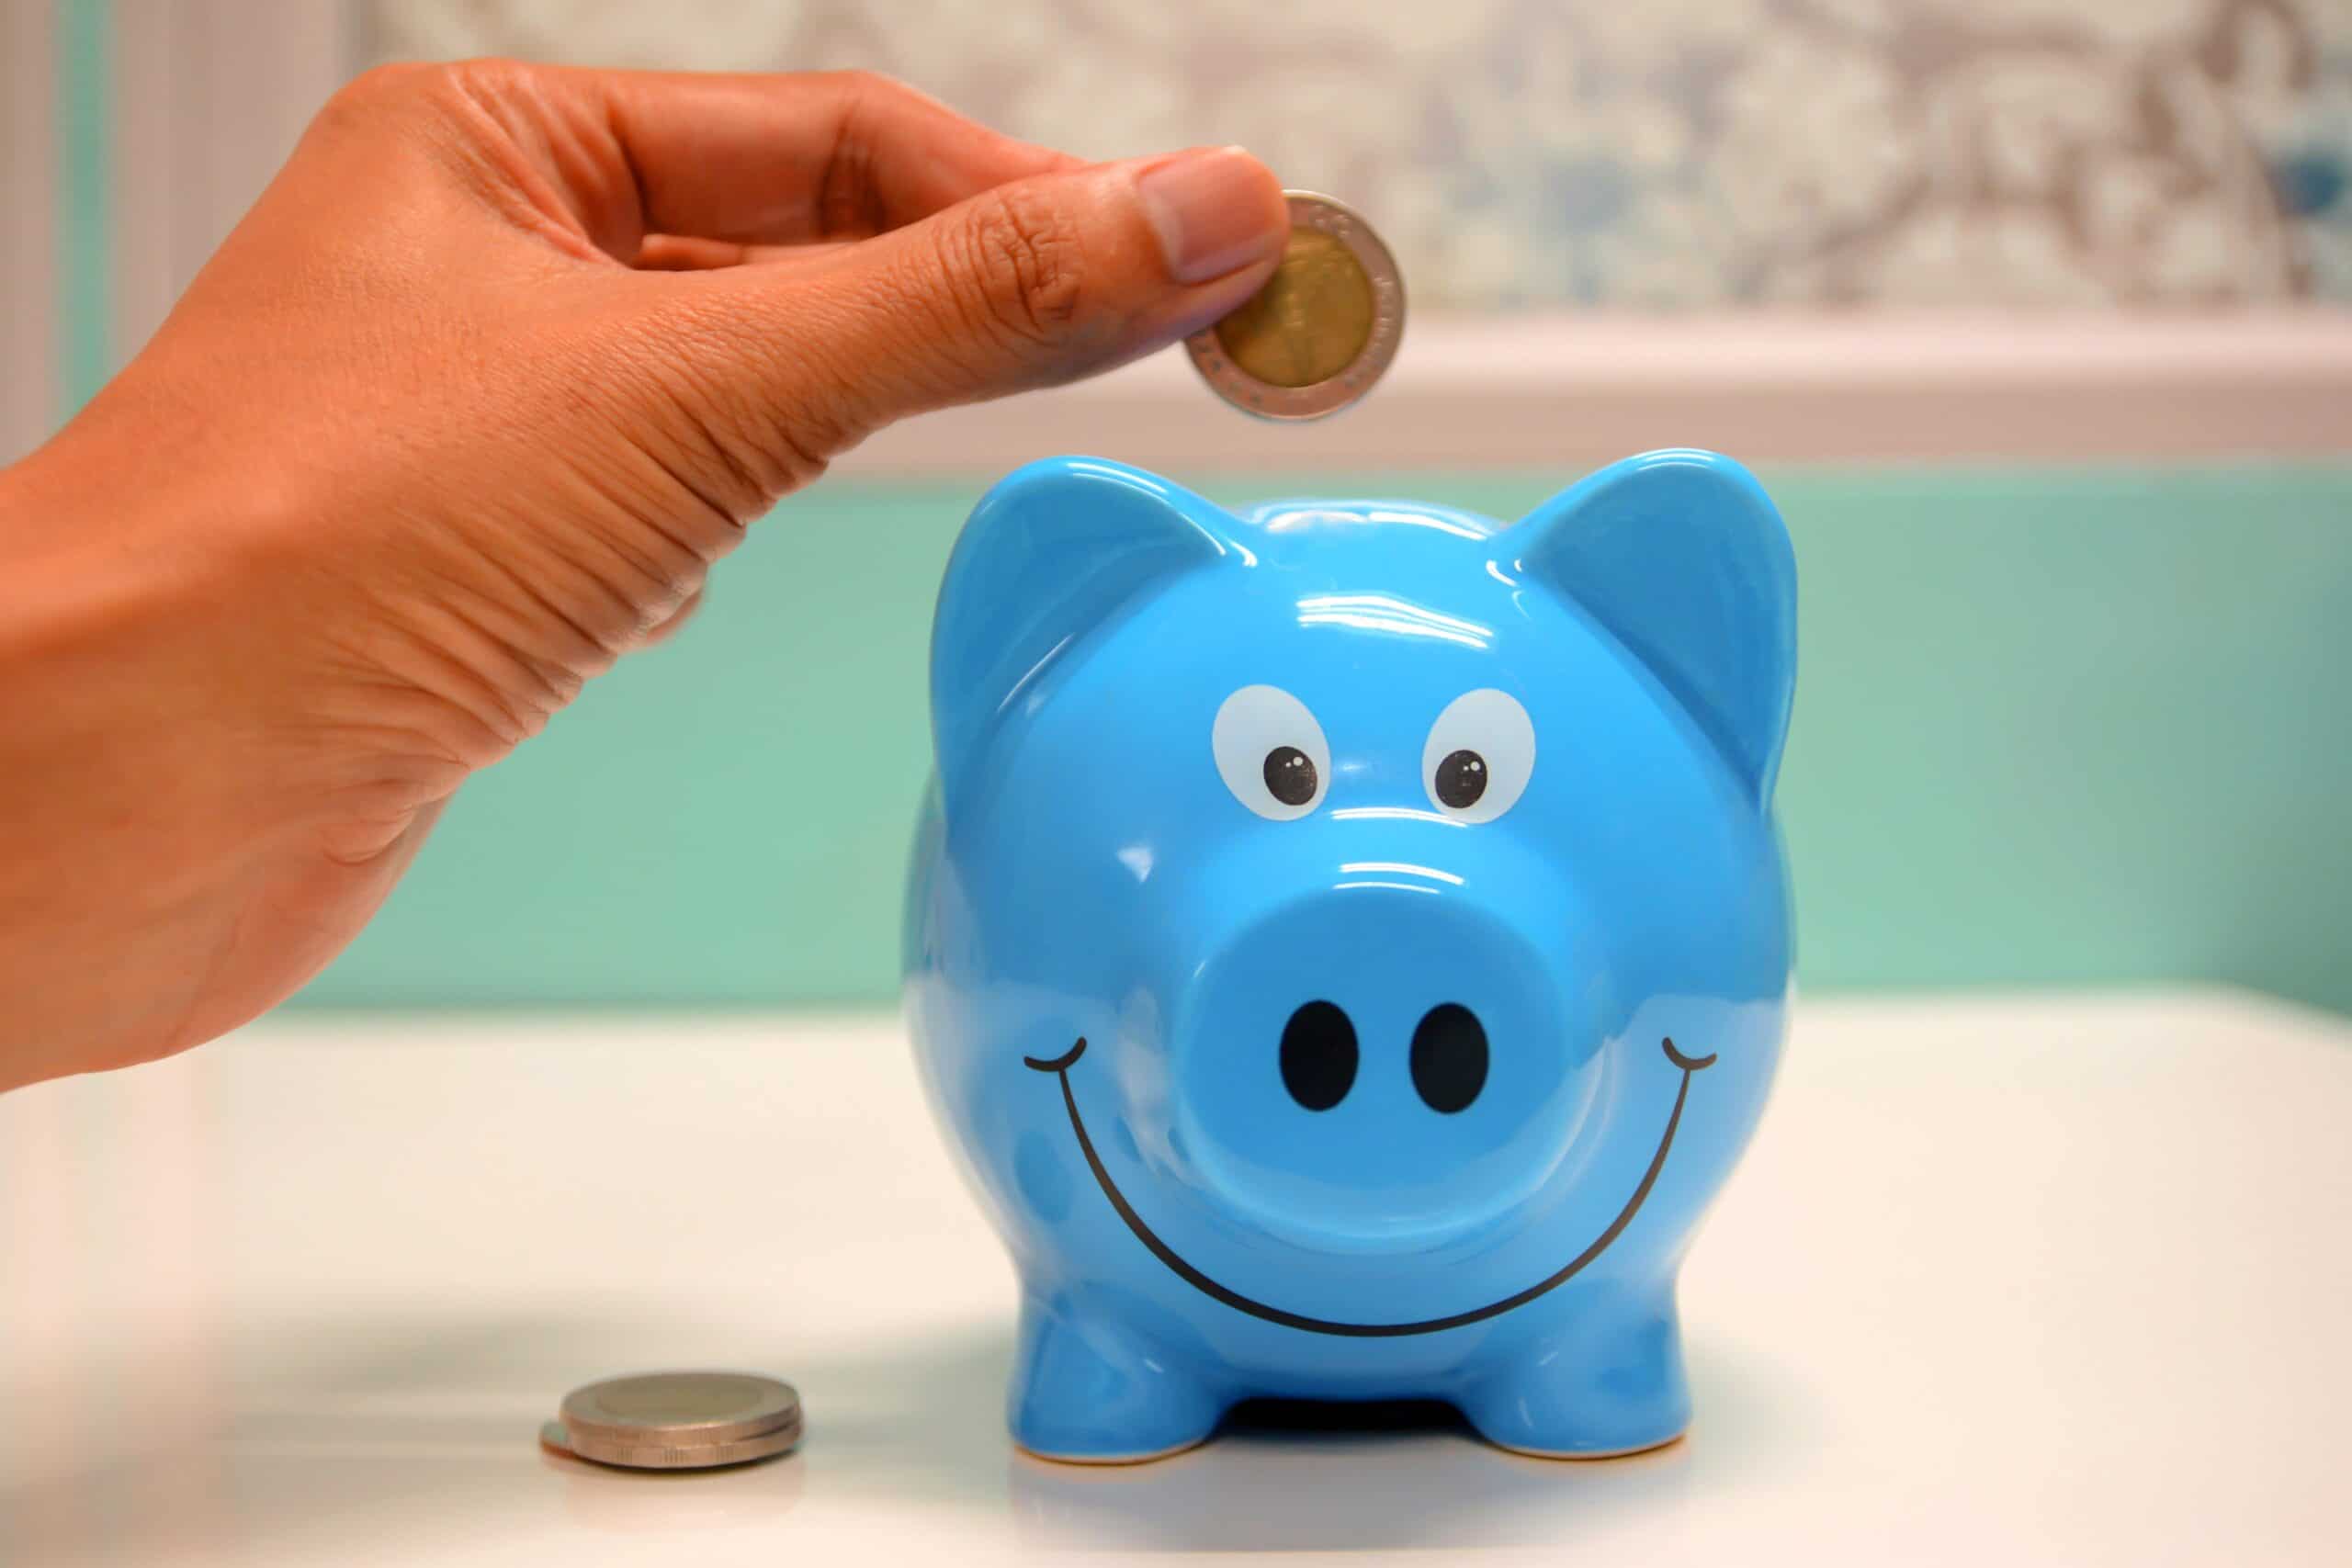 teach kids about money - saving